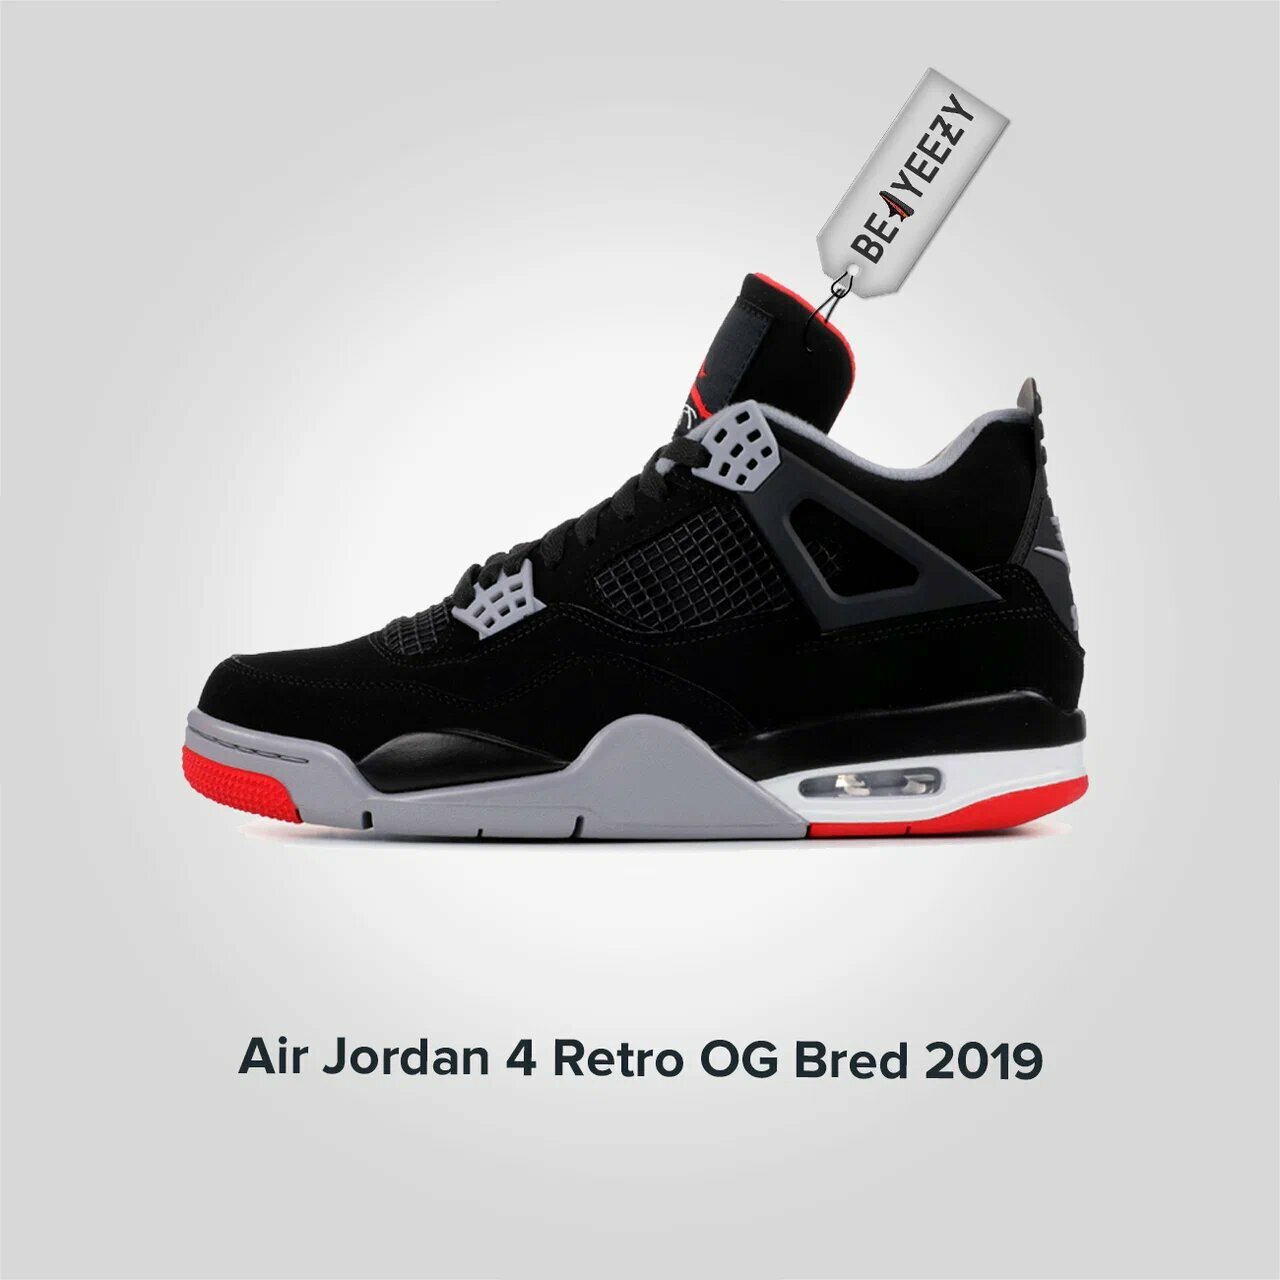 Jordan 4 Retro OG Bred 2019